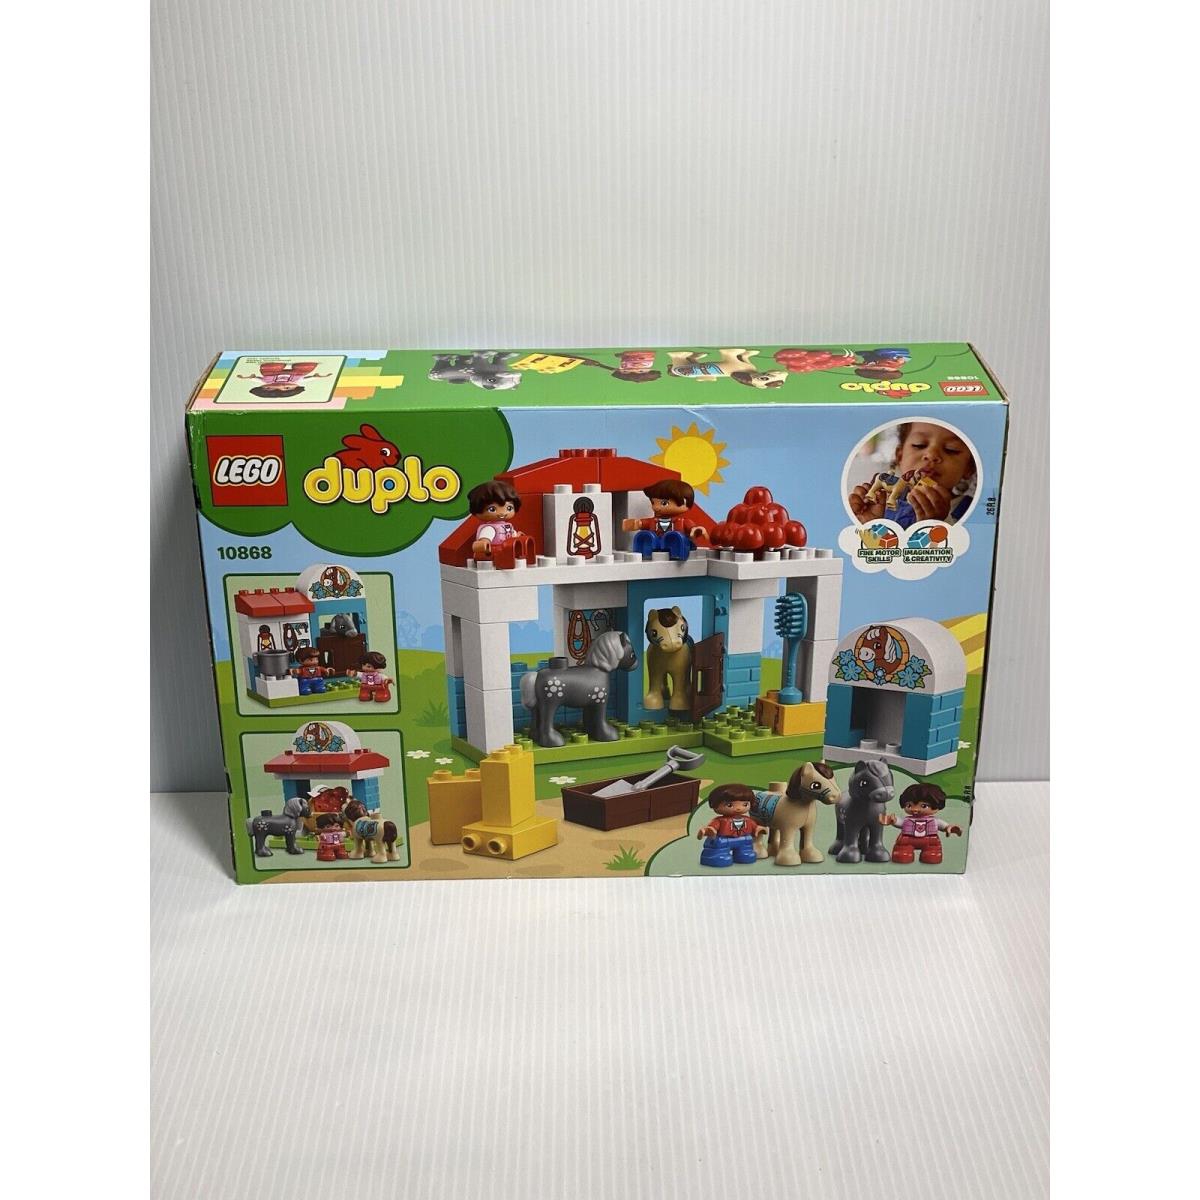 Retired 2018 Lego Duplo Farm Pony Stable Set 10868 w/ 59pcs